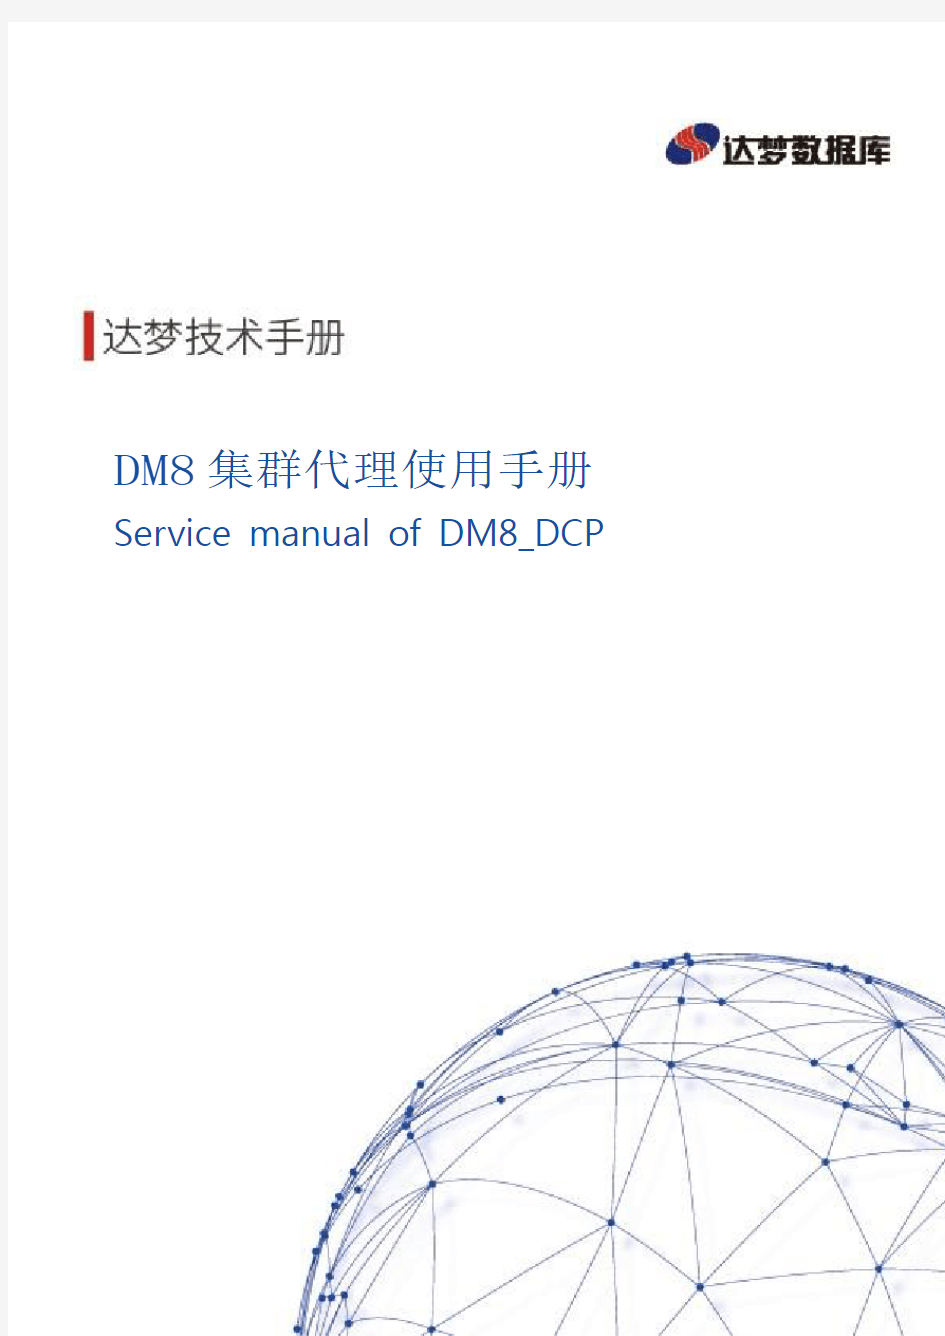 达梦数据库DM8集群代理使用手册-D